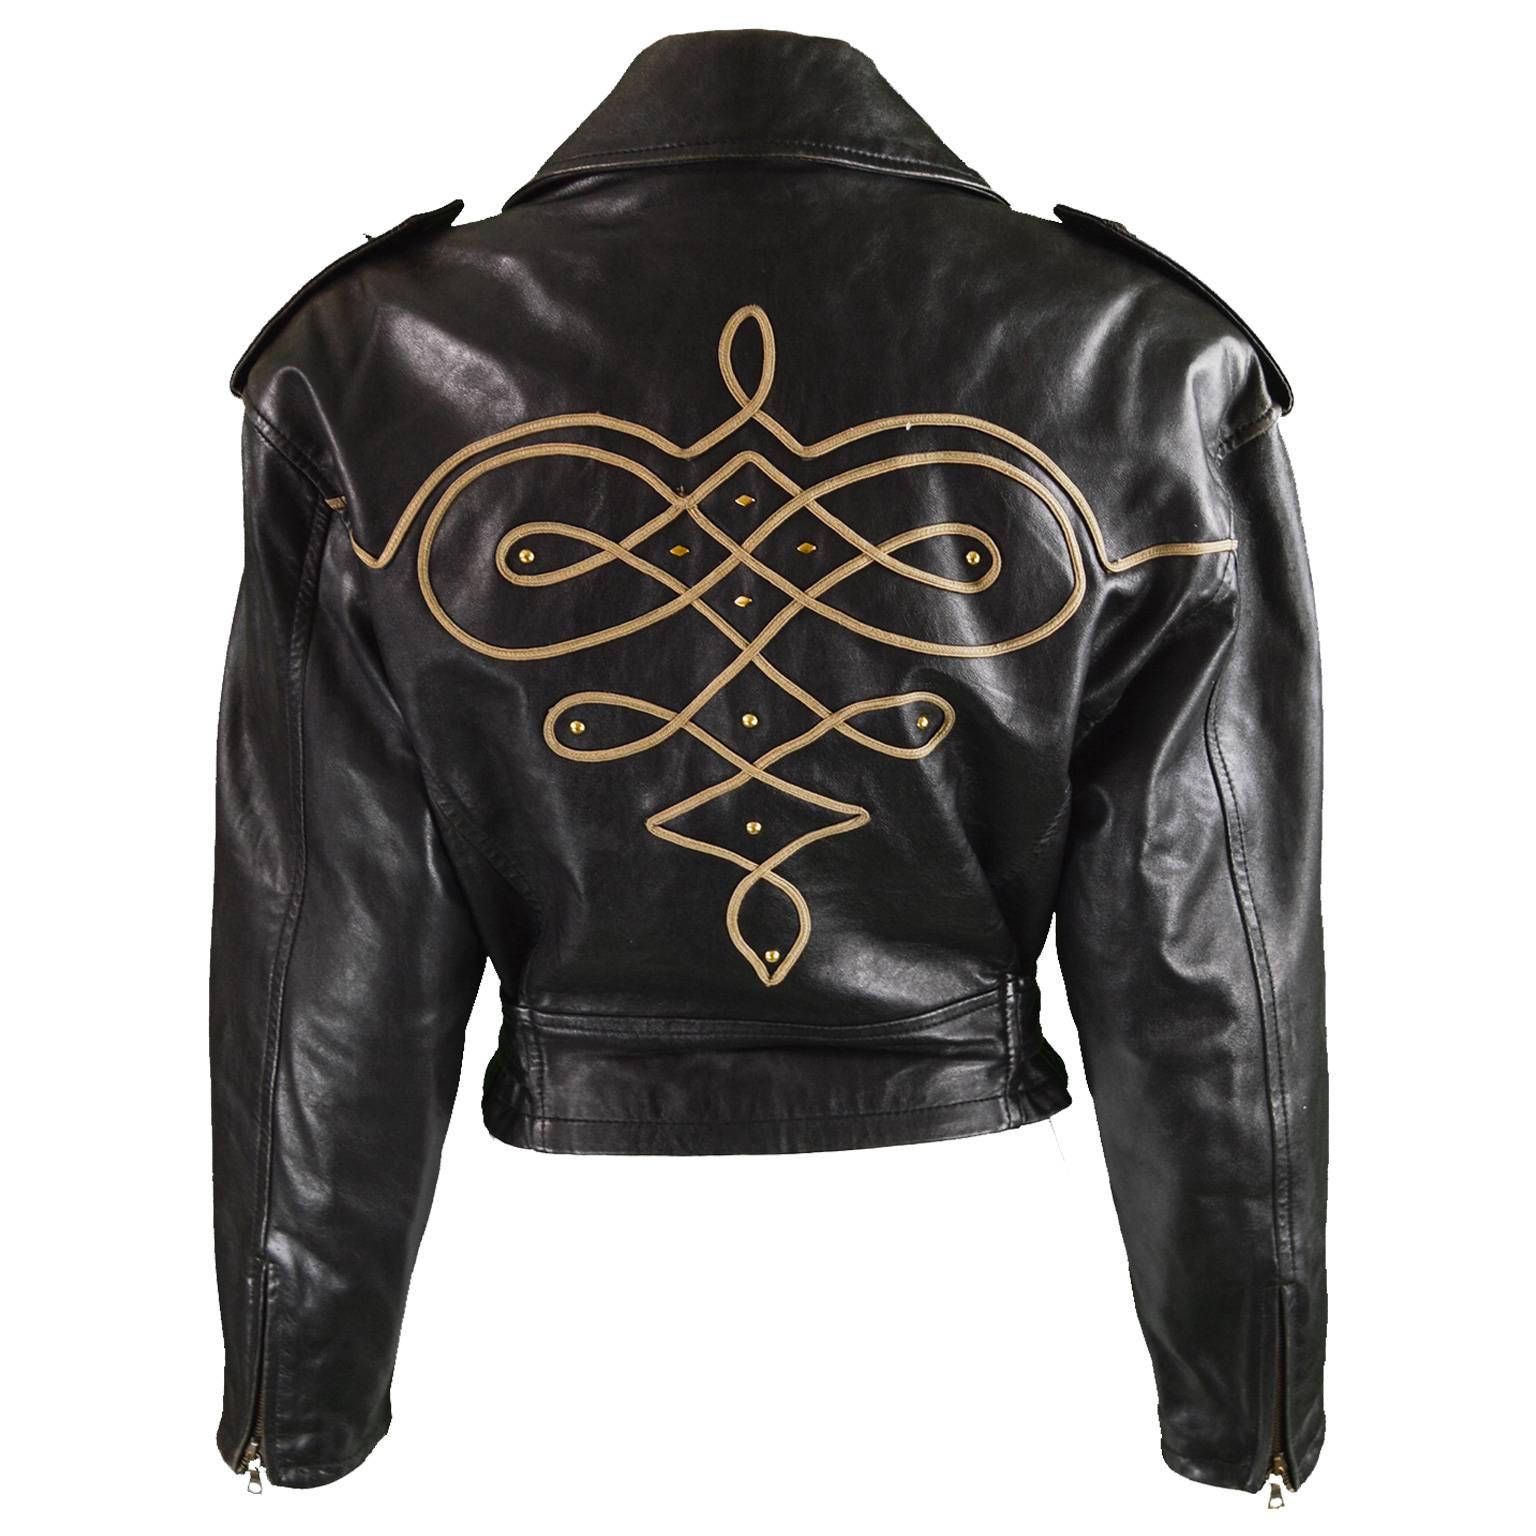 Byblos Women's Black Appliquéd Italian Leather Biker Jacket, A/W 1992